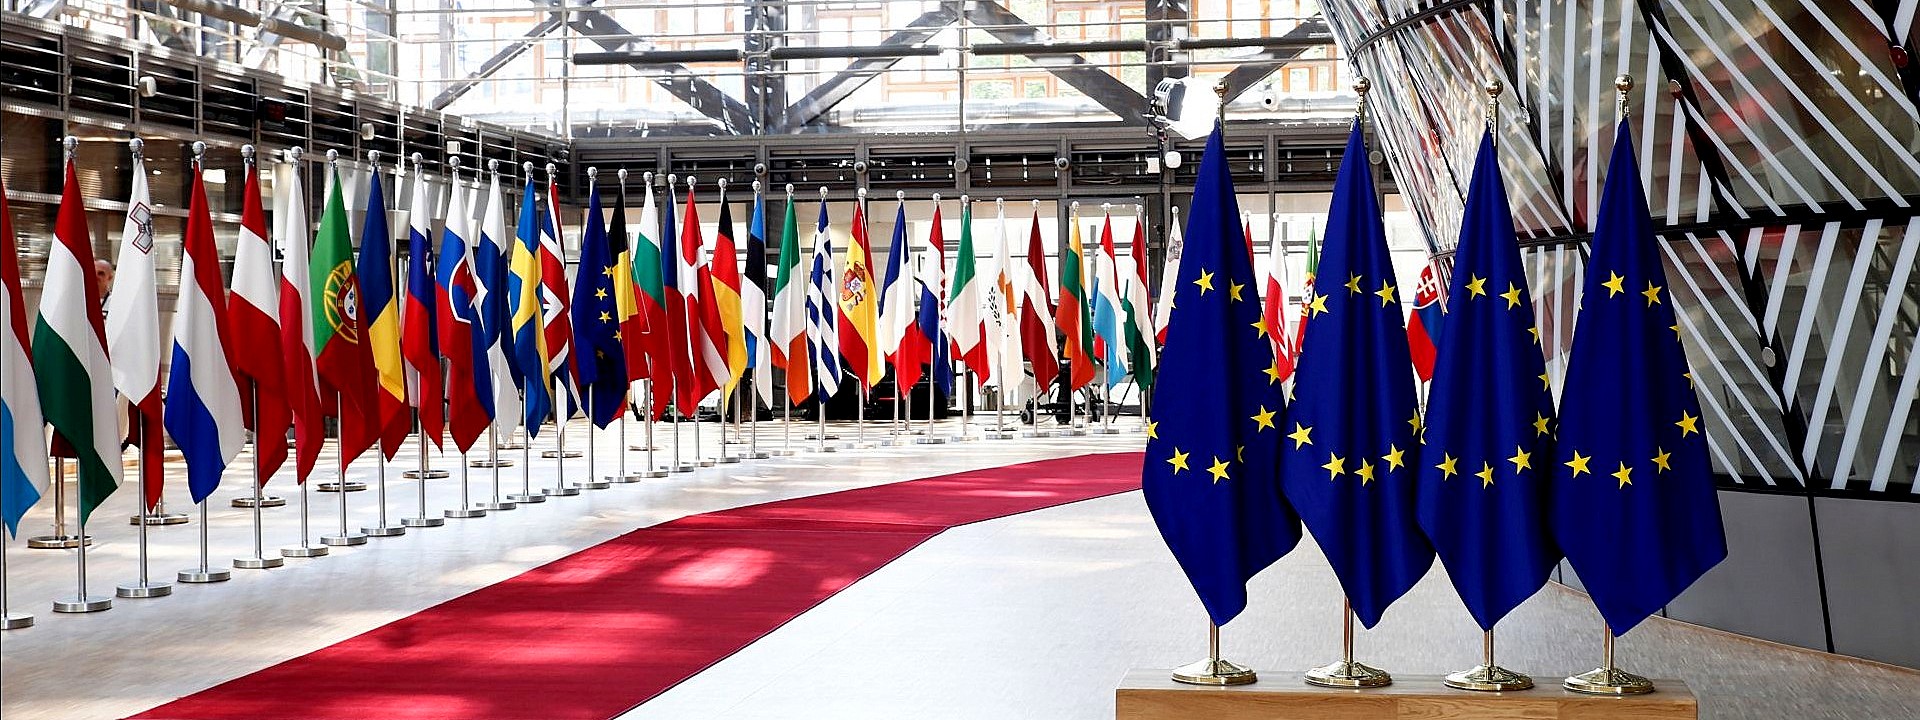 La sfilata delle bandiere dei 27 Paesi della UE all'ingresso del Parlamento Europeo a Bruxelles